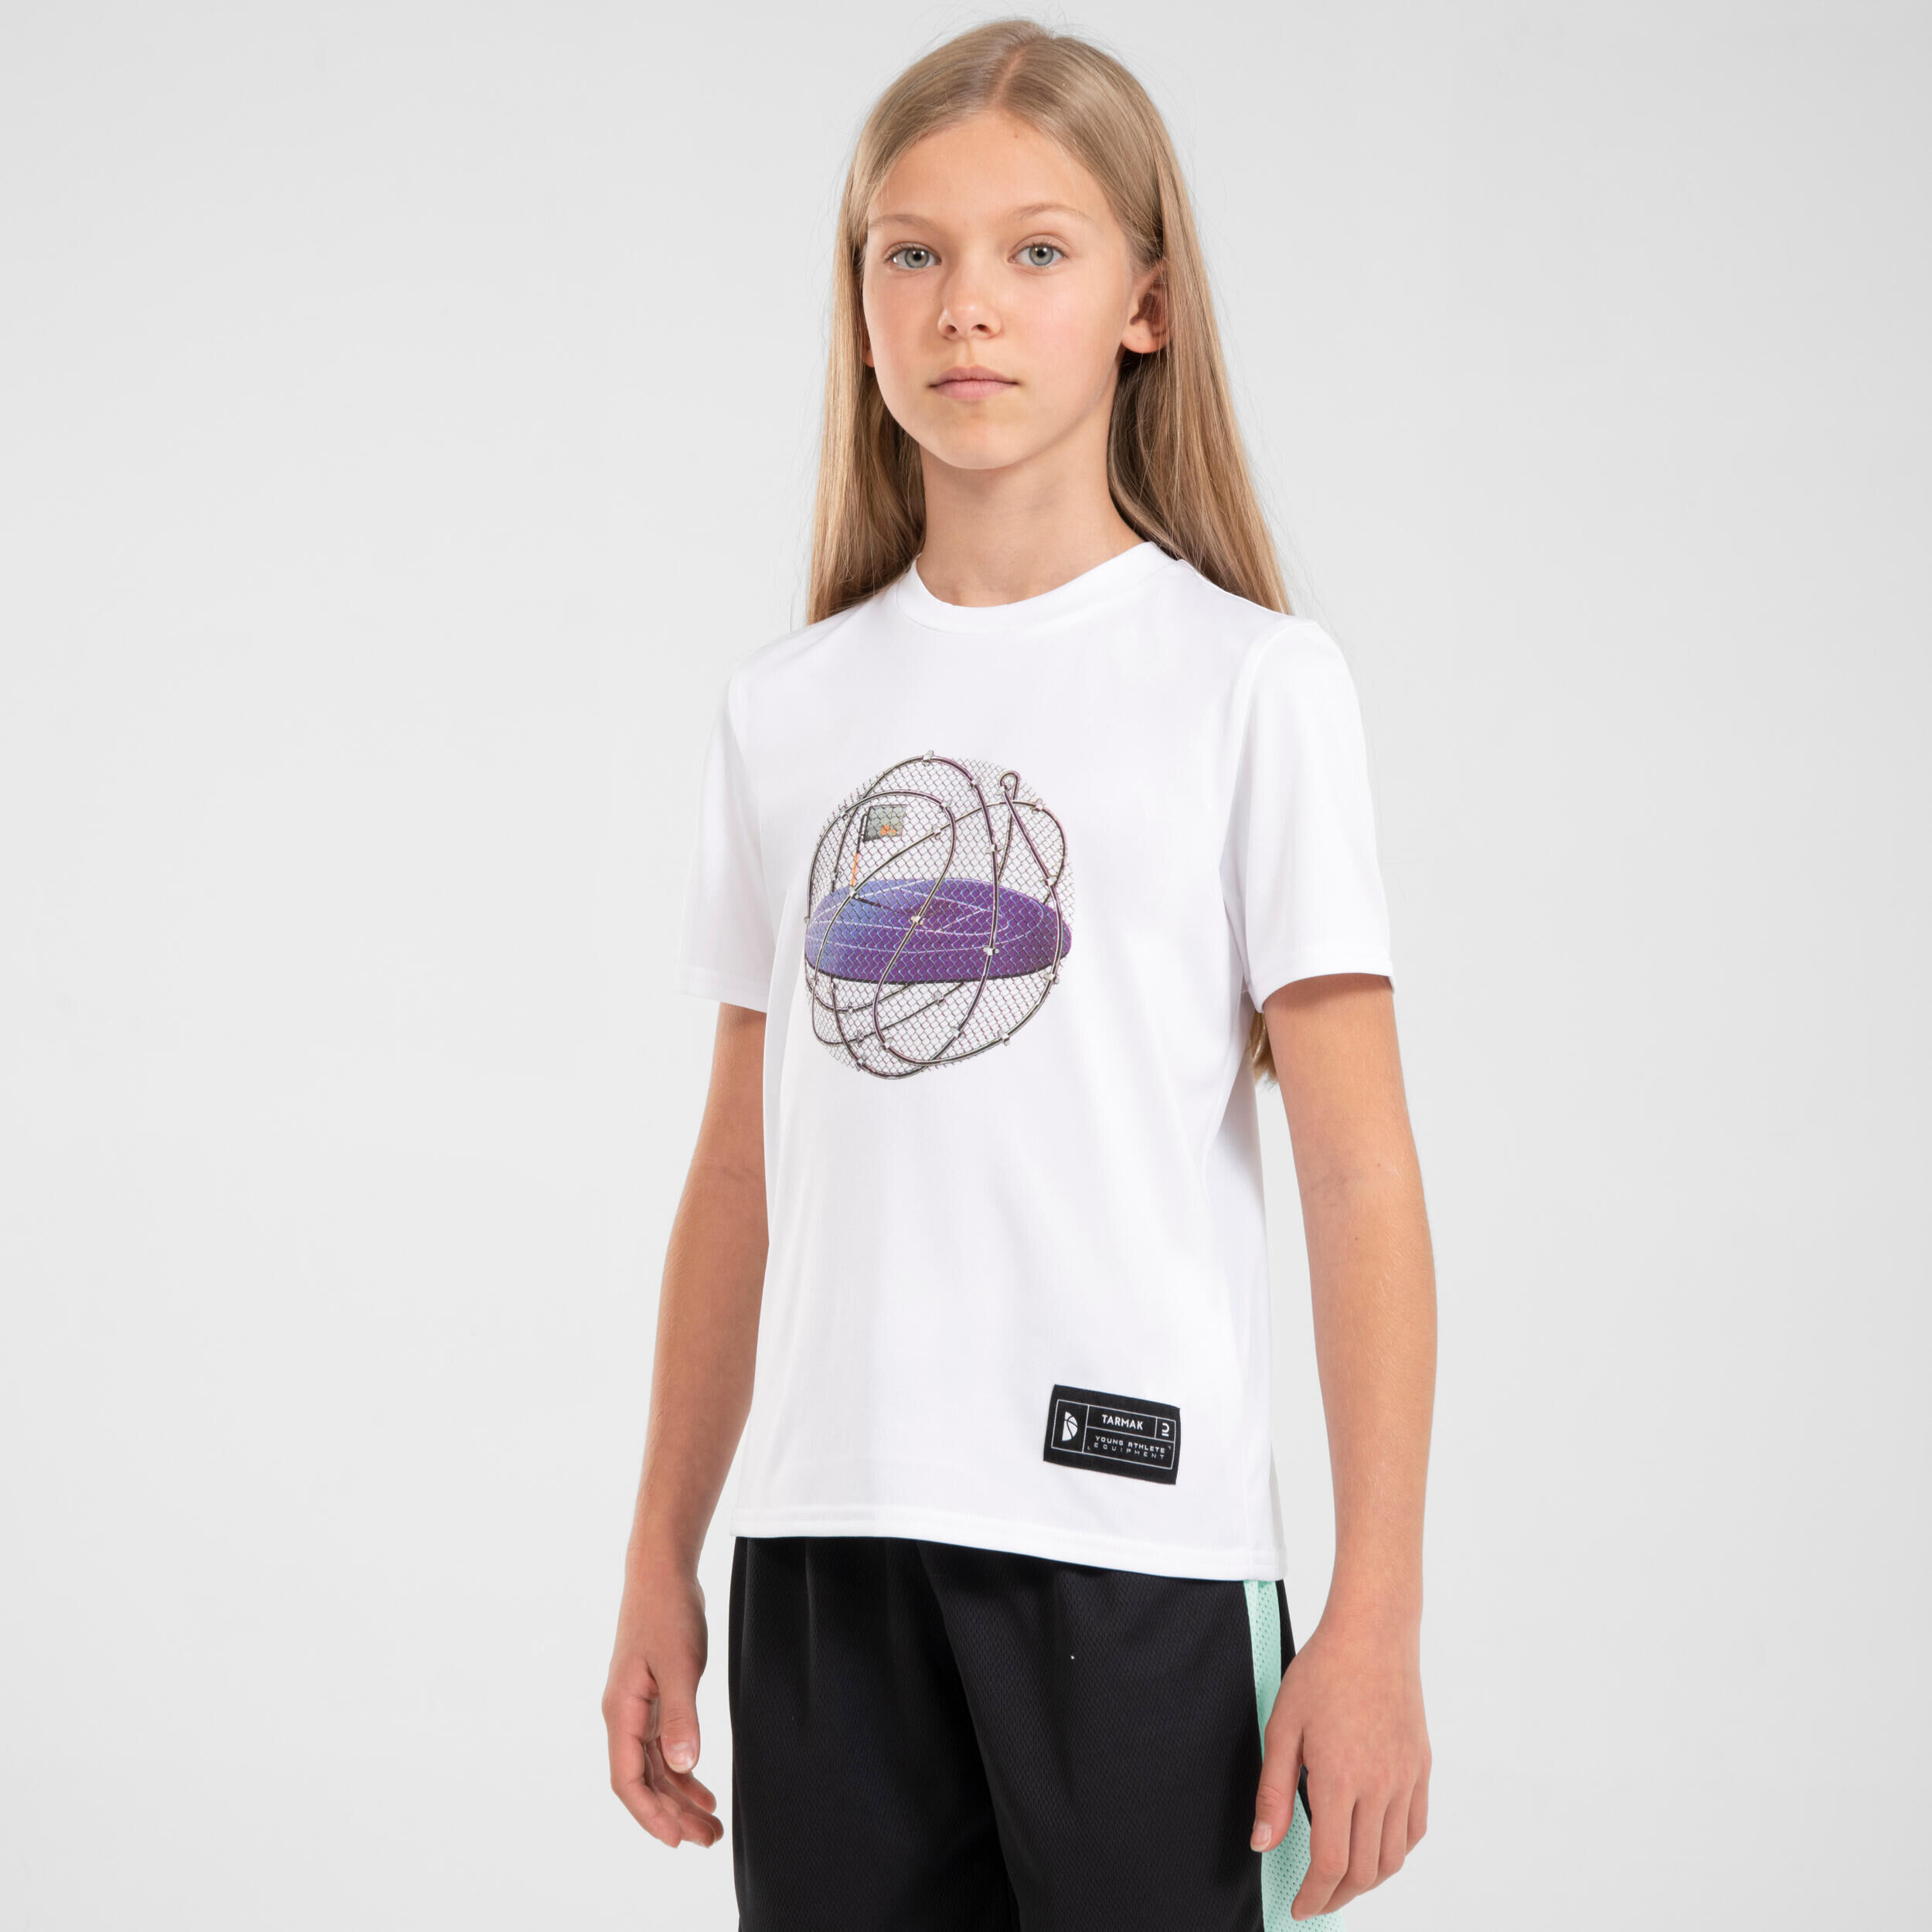 TARMAK Kids' Basketball T-Shirt / Jersey TS500 Fast - White